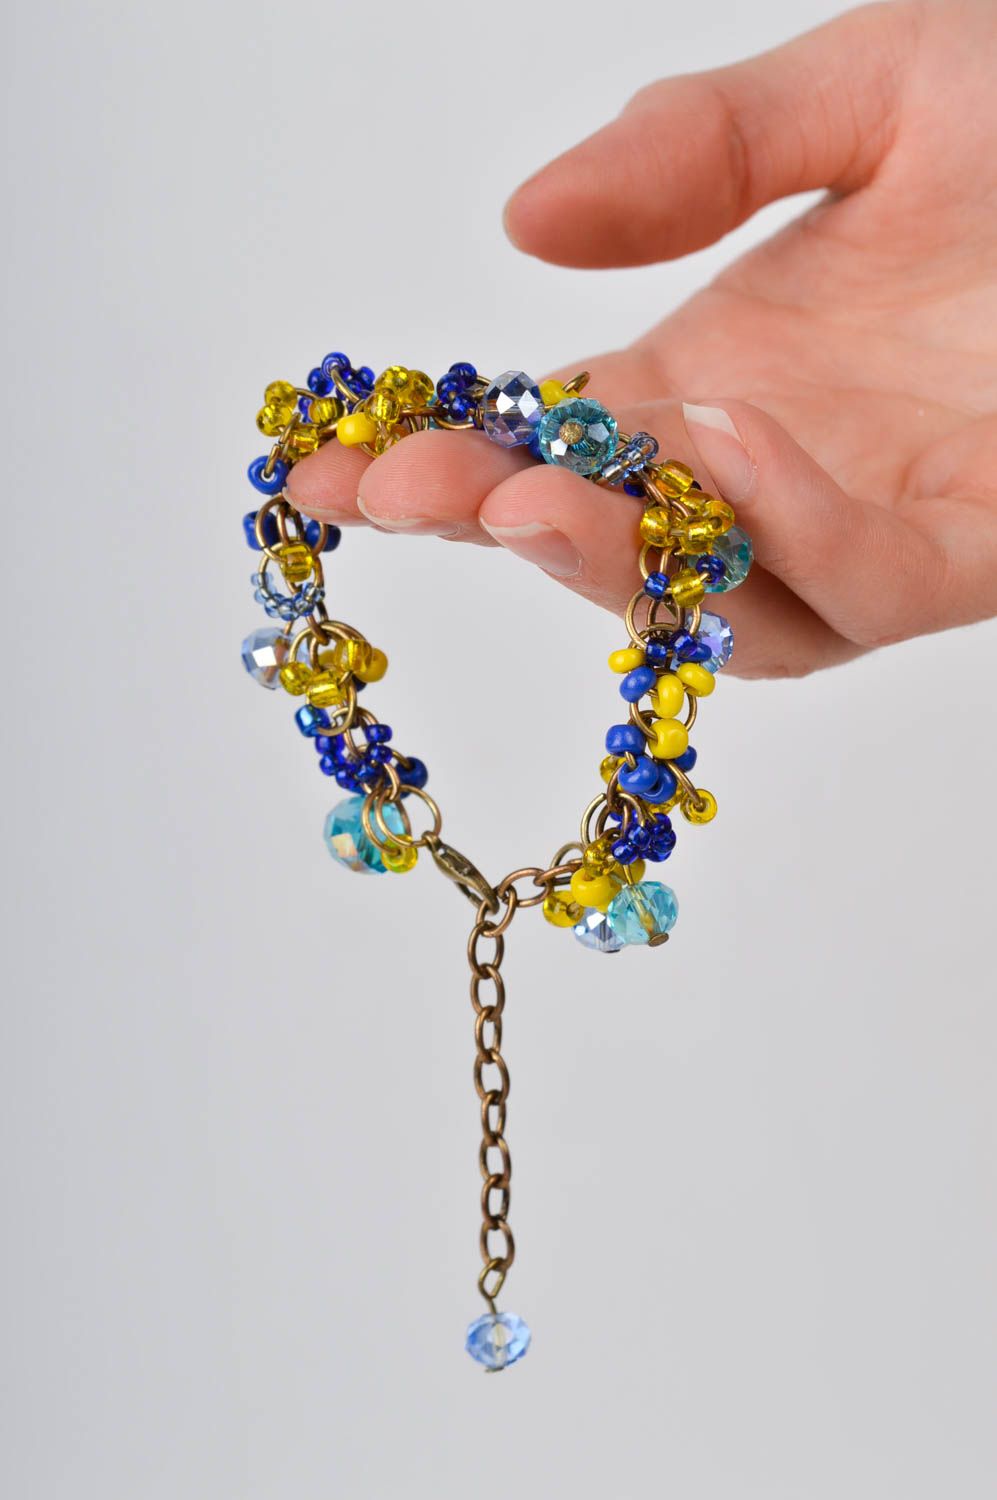 Браслет ручной работы украшение из бисера яркий браслет на руку сине-желтый фото 2